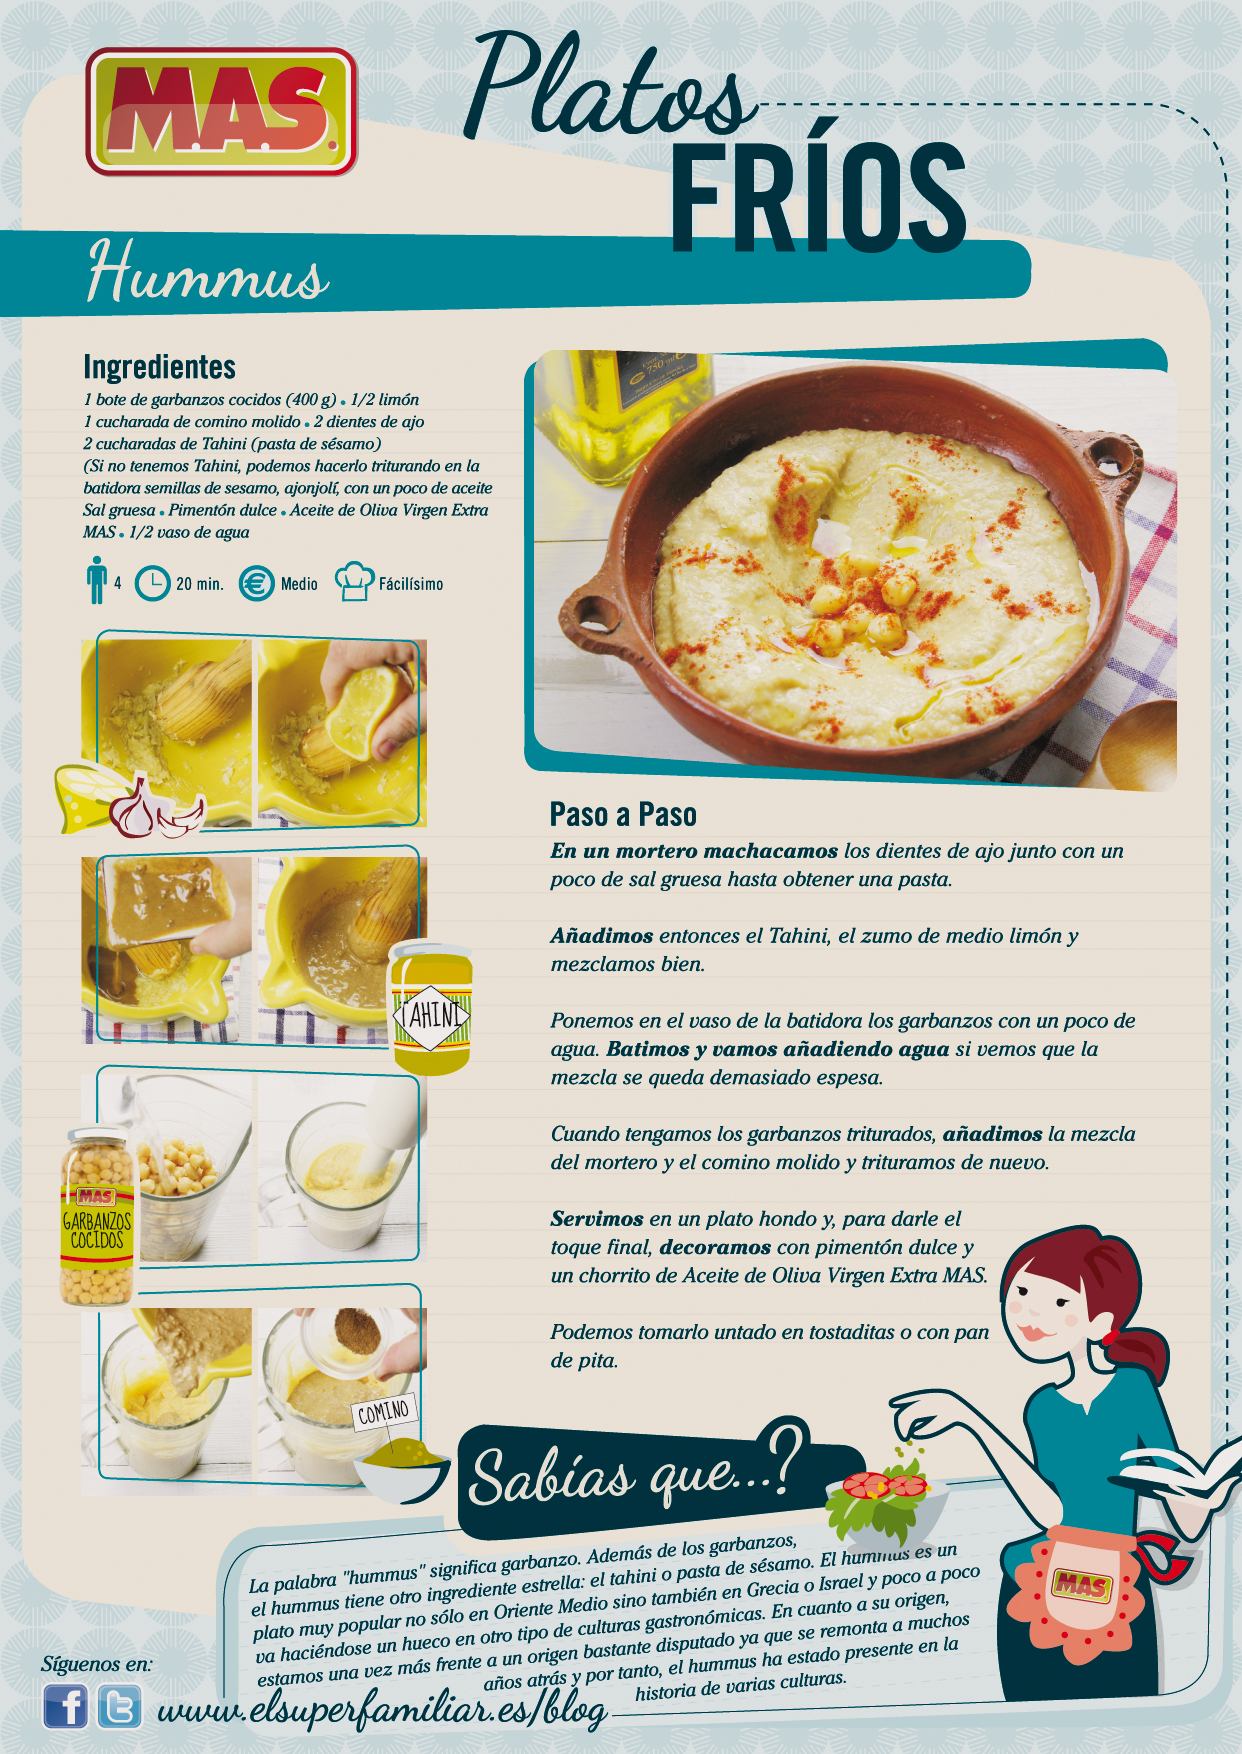 Infografía que muestra la receta de hummus